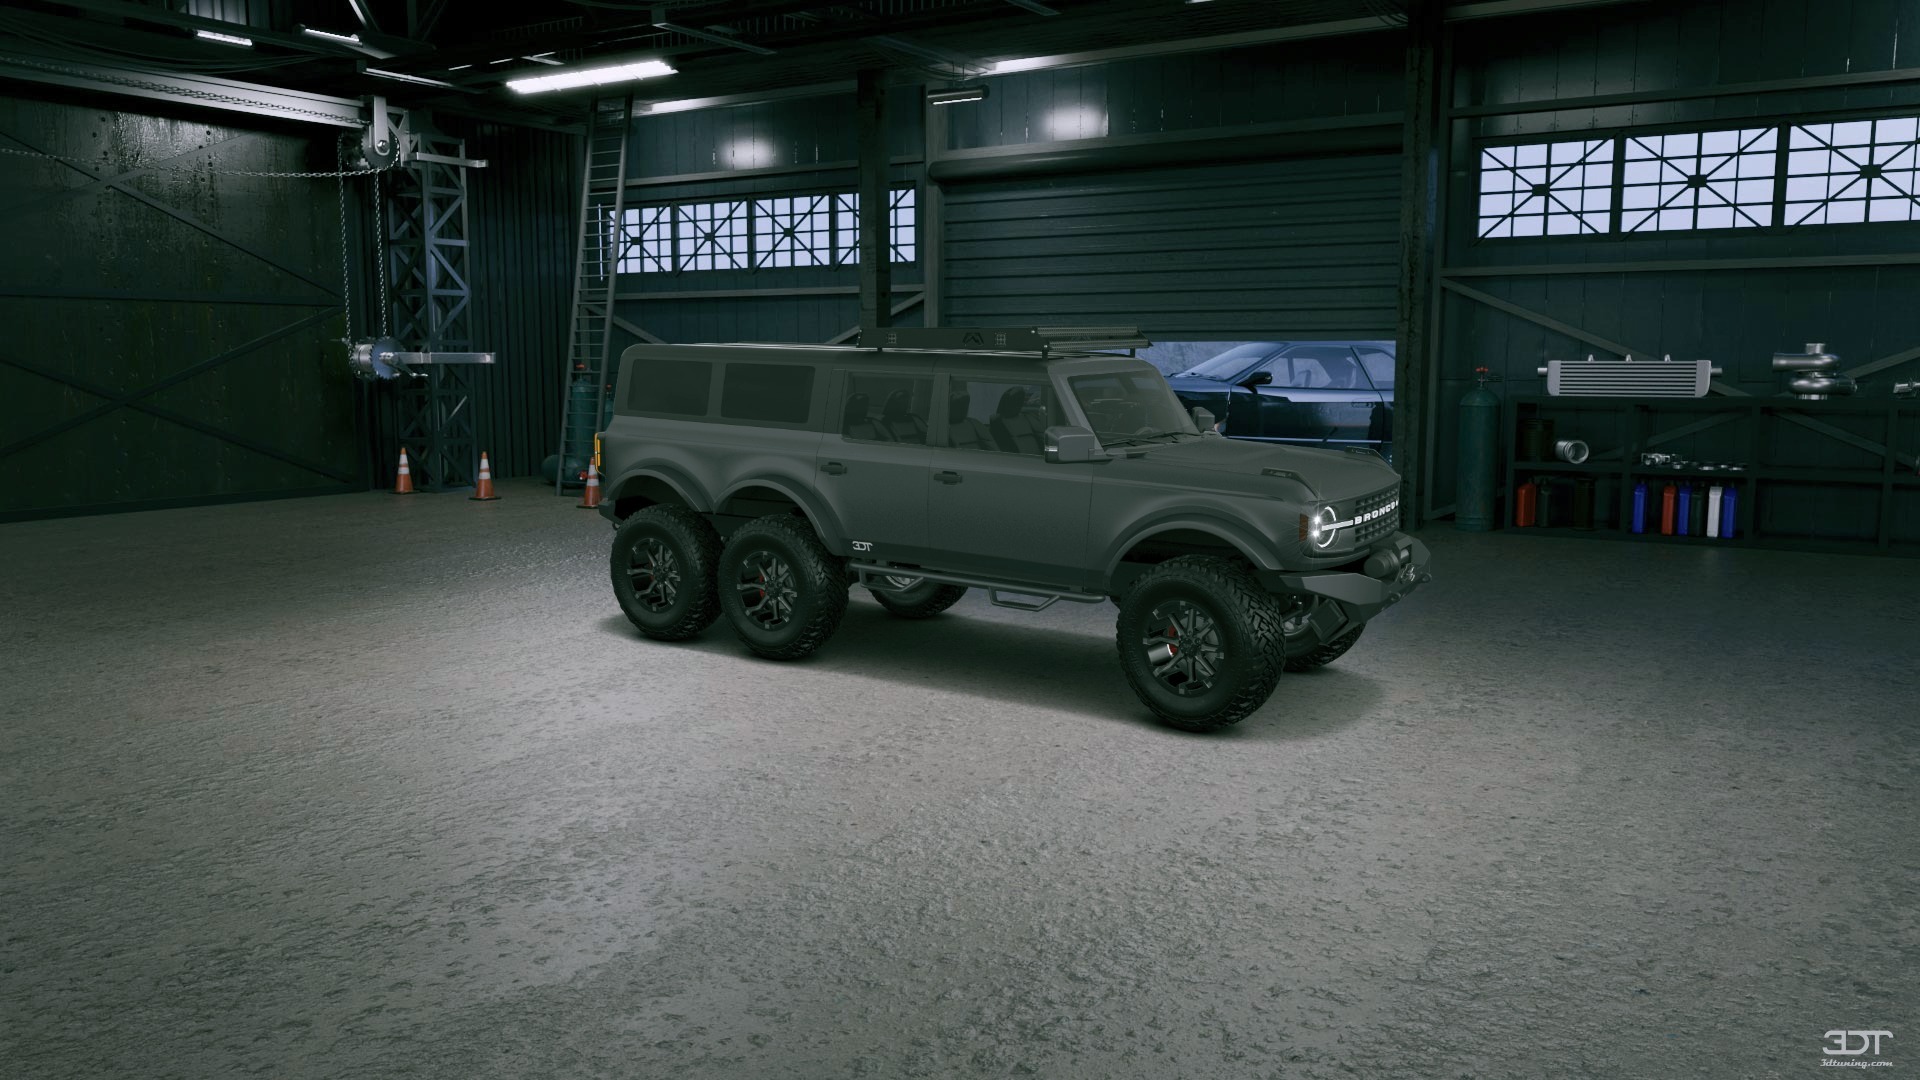 Ford Bronco 6X6 4 Door pickup truck 2021